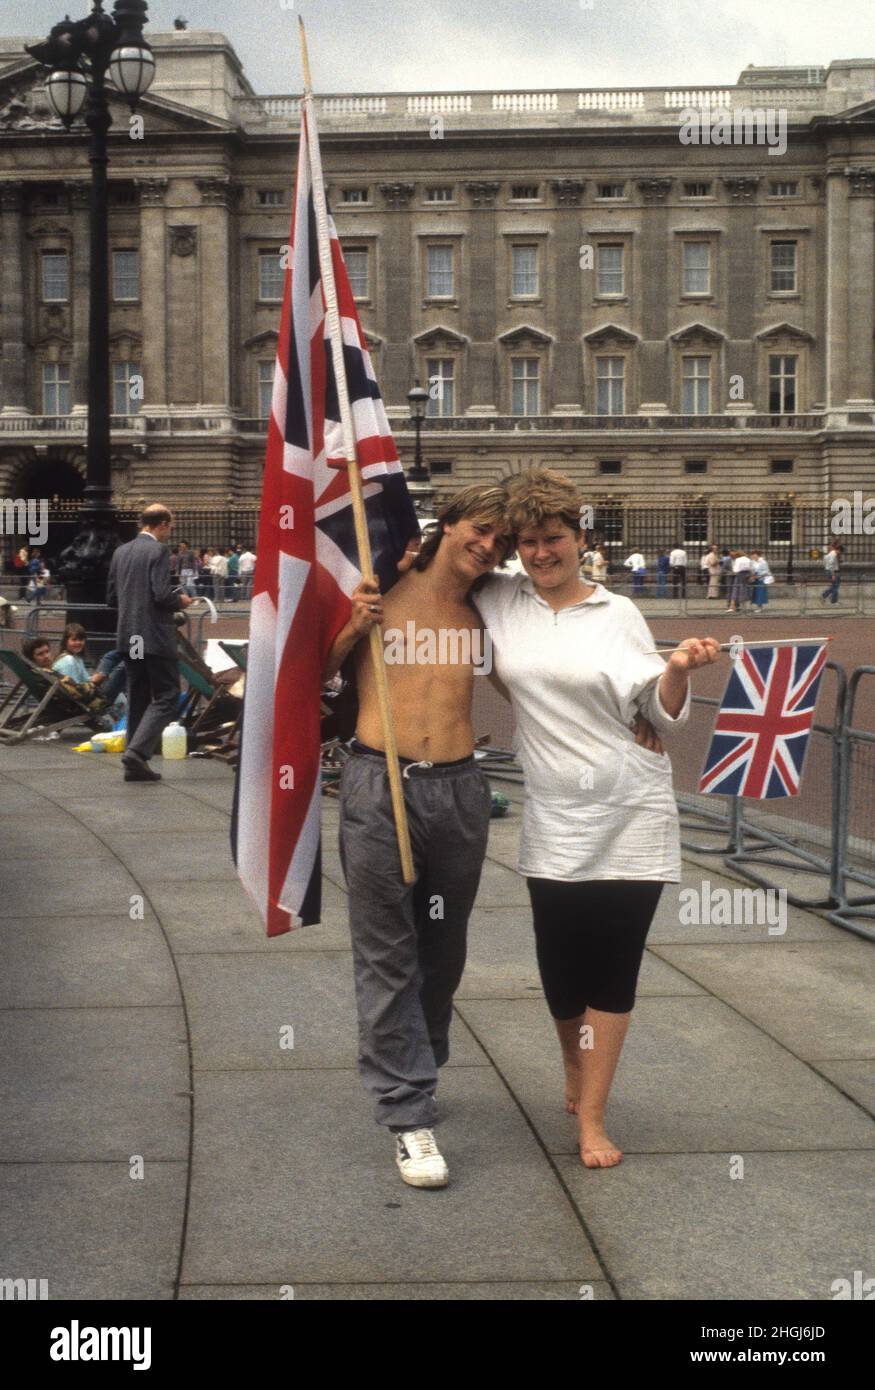 Un jeune couple est accompagné de drapeaux Union Jack tandis que les foules se rassemblent pour le mariage du Prince Andrew et de Sarah Ferguson le 23rd 1986 juillet Banque D'Images